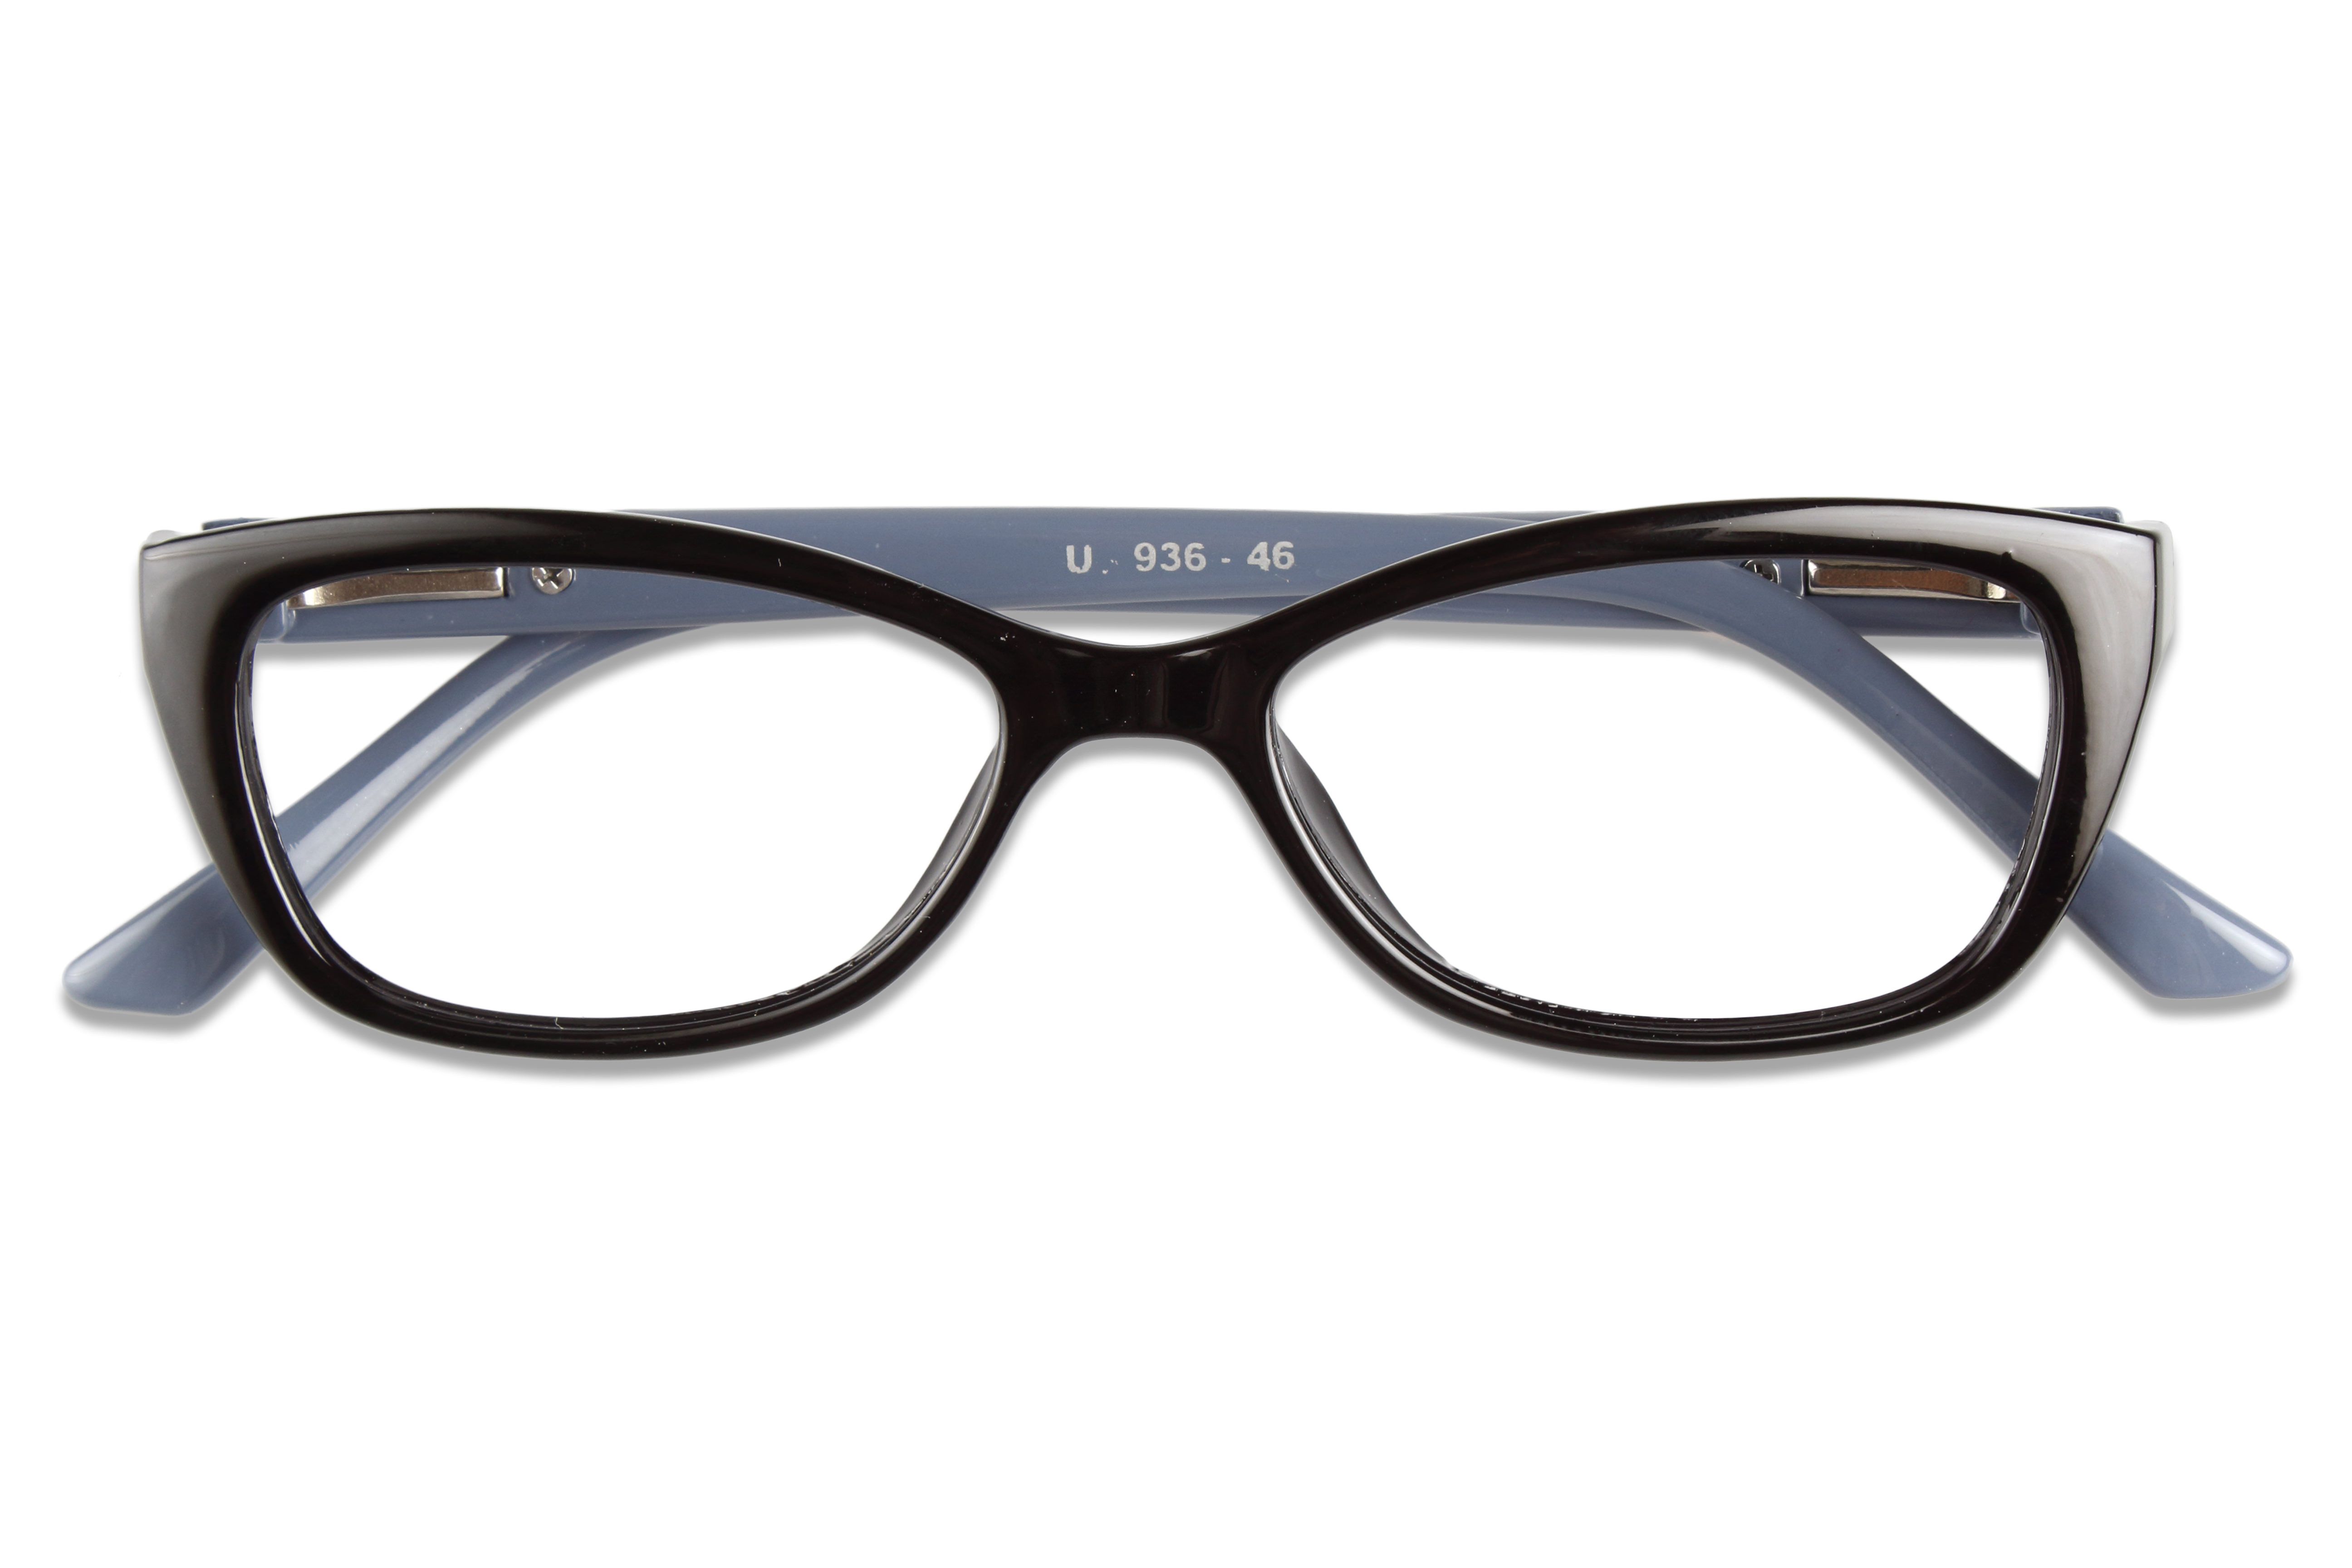 Buy Reactr Cat Eye Glasses Premium Optical Specs Full Frame Eyeglasses For Girl Black52clear 6405